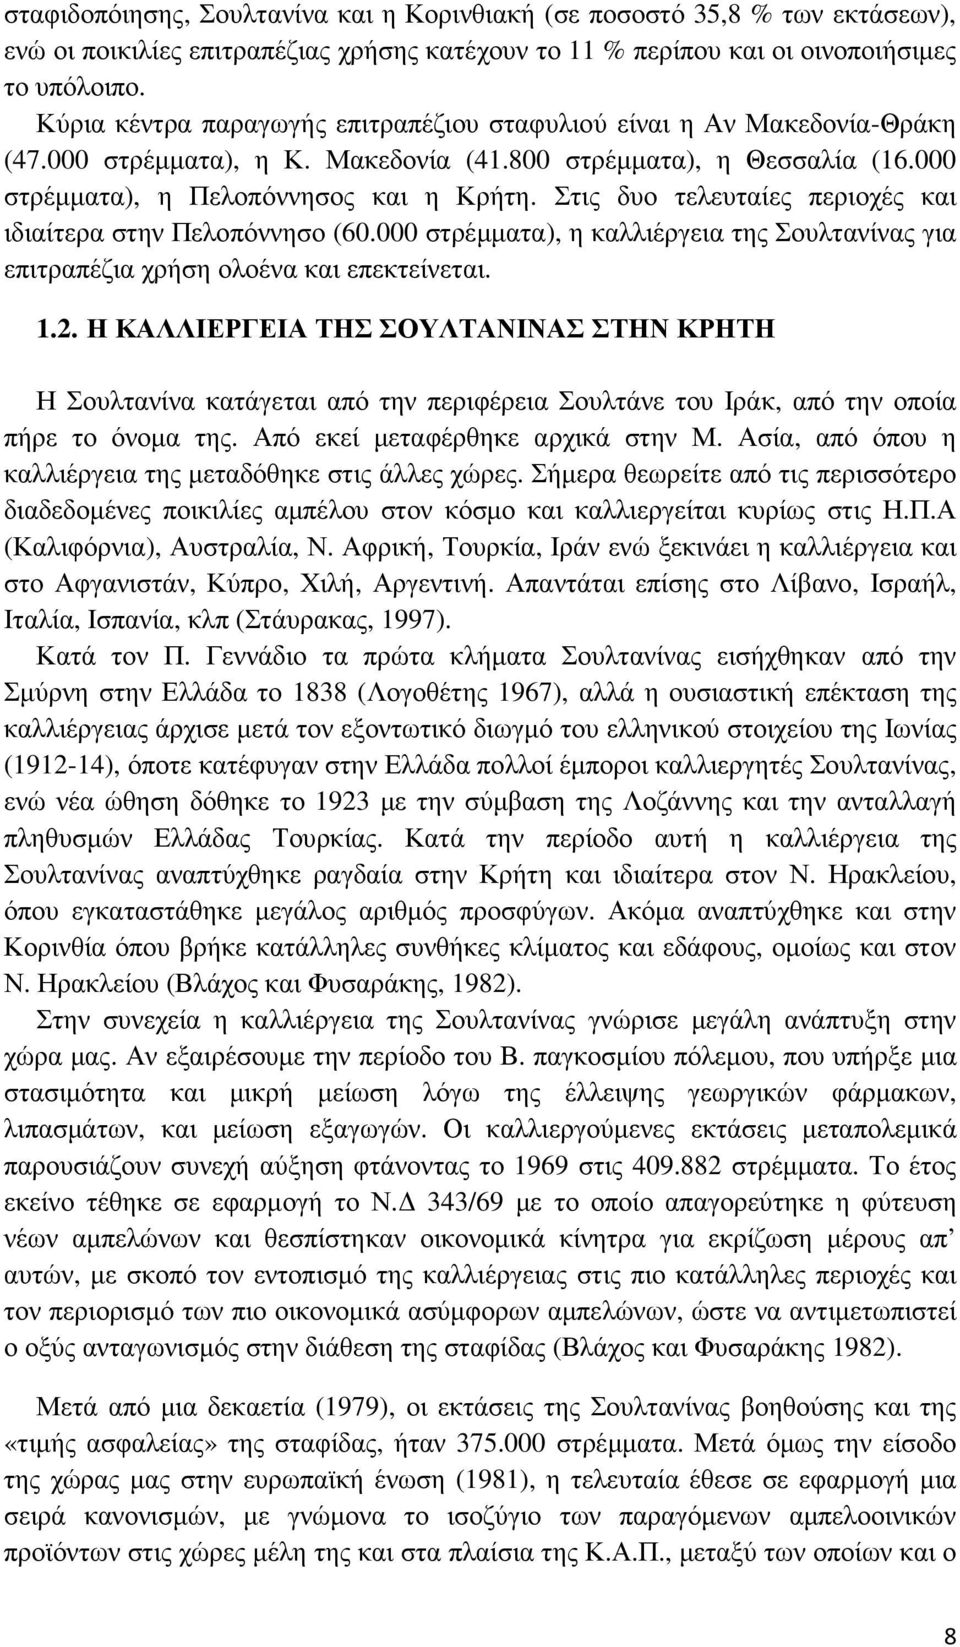 Στις δυο τελευταίες περιοχές και ιδιαίτερα στην Πελοπόννησο (60.000 στρέµµατα), η καλλιέργεια της Σουλτανίνας για επιτραπέζια χρήση ολοένα και επεκτείνεται. 1.2.